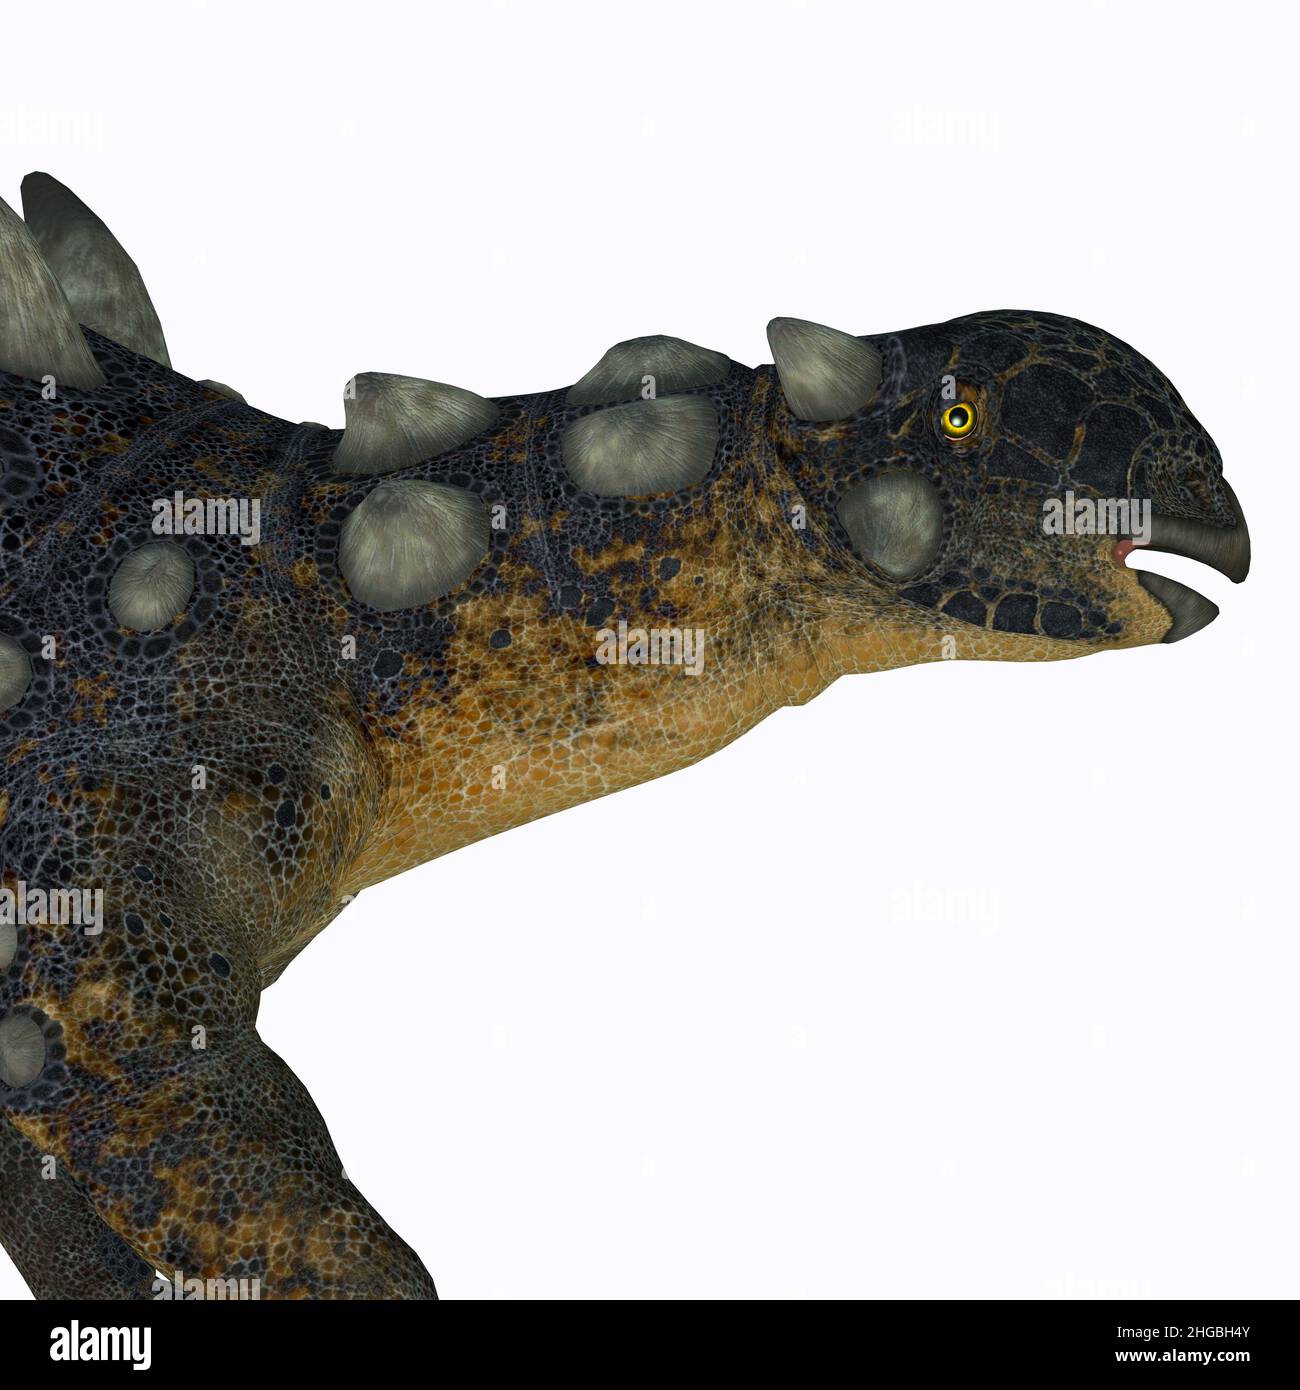 Euoplocephalus fue un dinosaurio anquilosaurio blindado que vivió en Alberta, Canadá durante el período Cretácico. Foto de stock